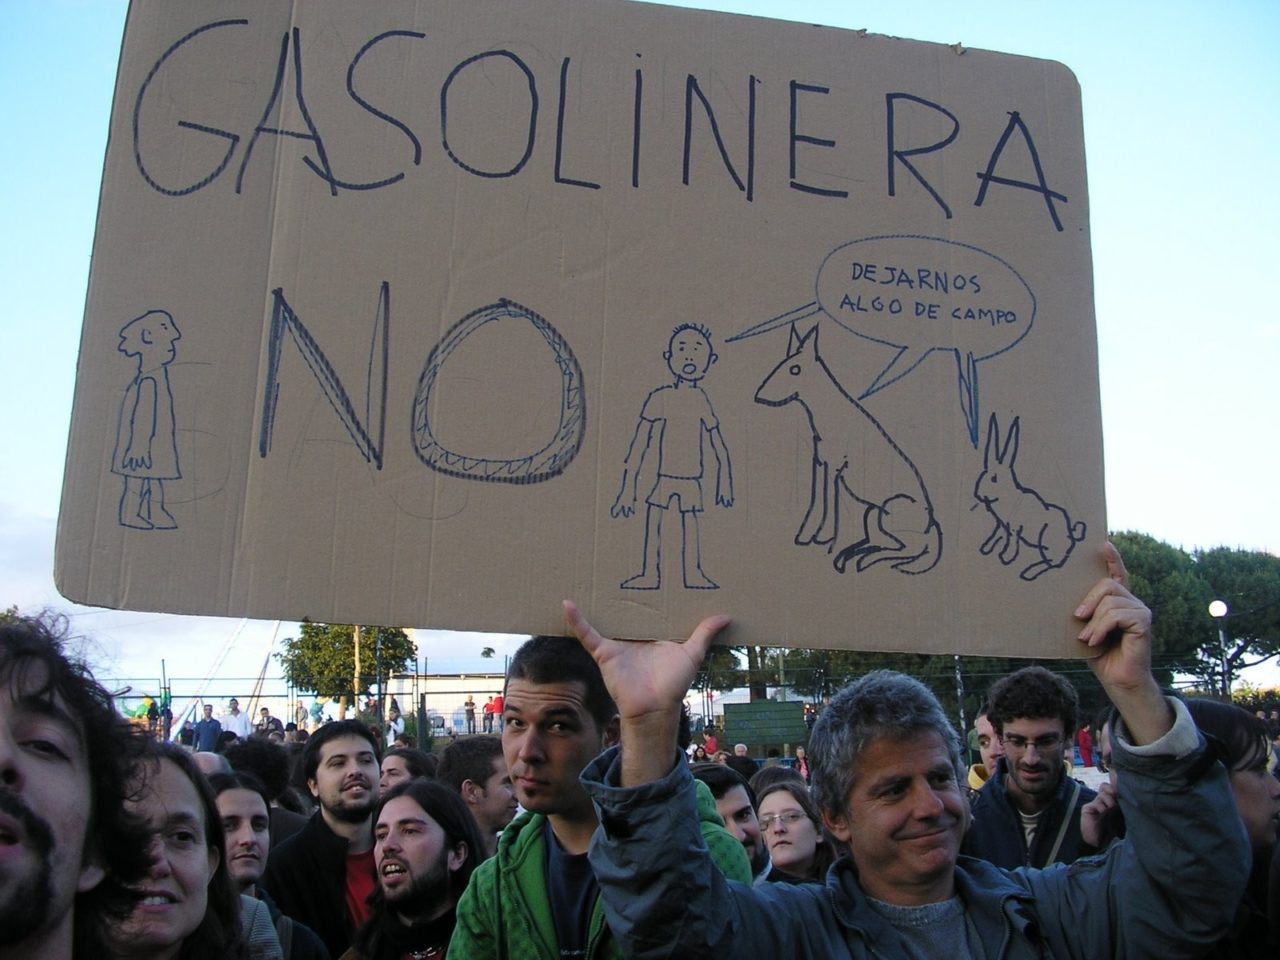 Gasolinera en Hortaleza ¡NO!